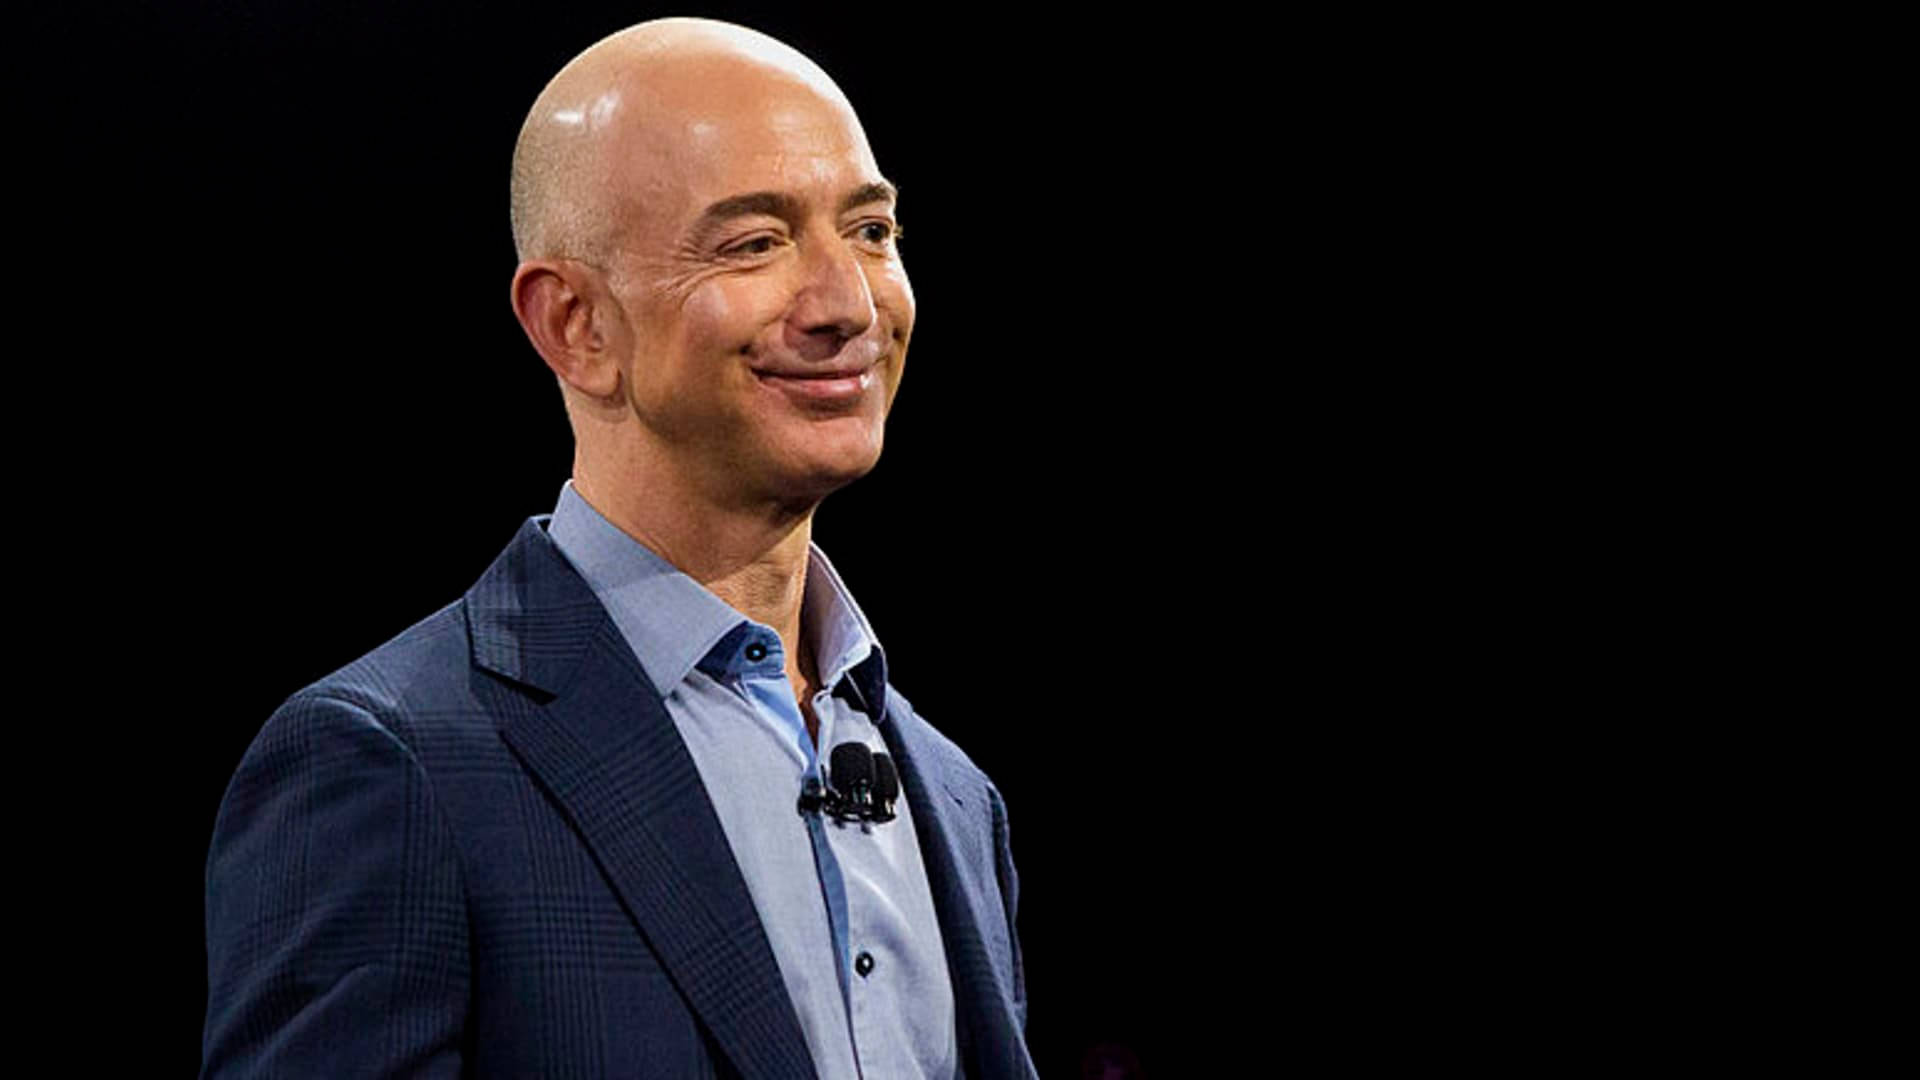 Jeff Bezos Smiling Wallpaper